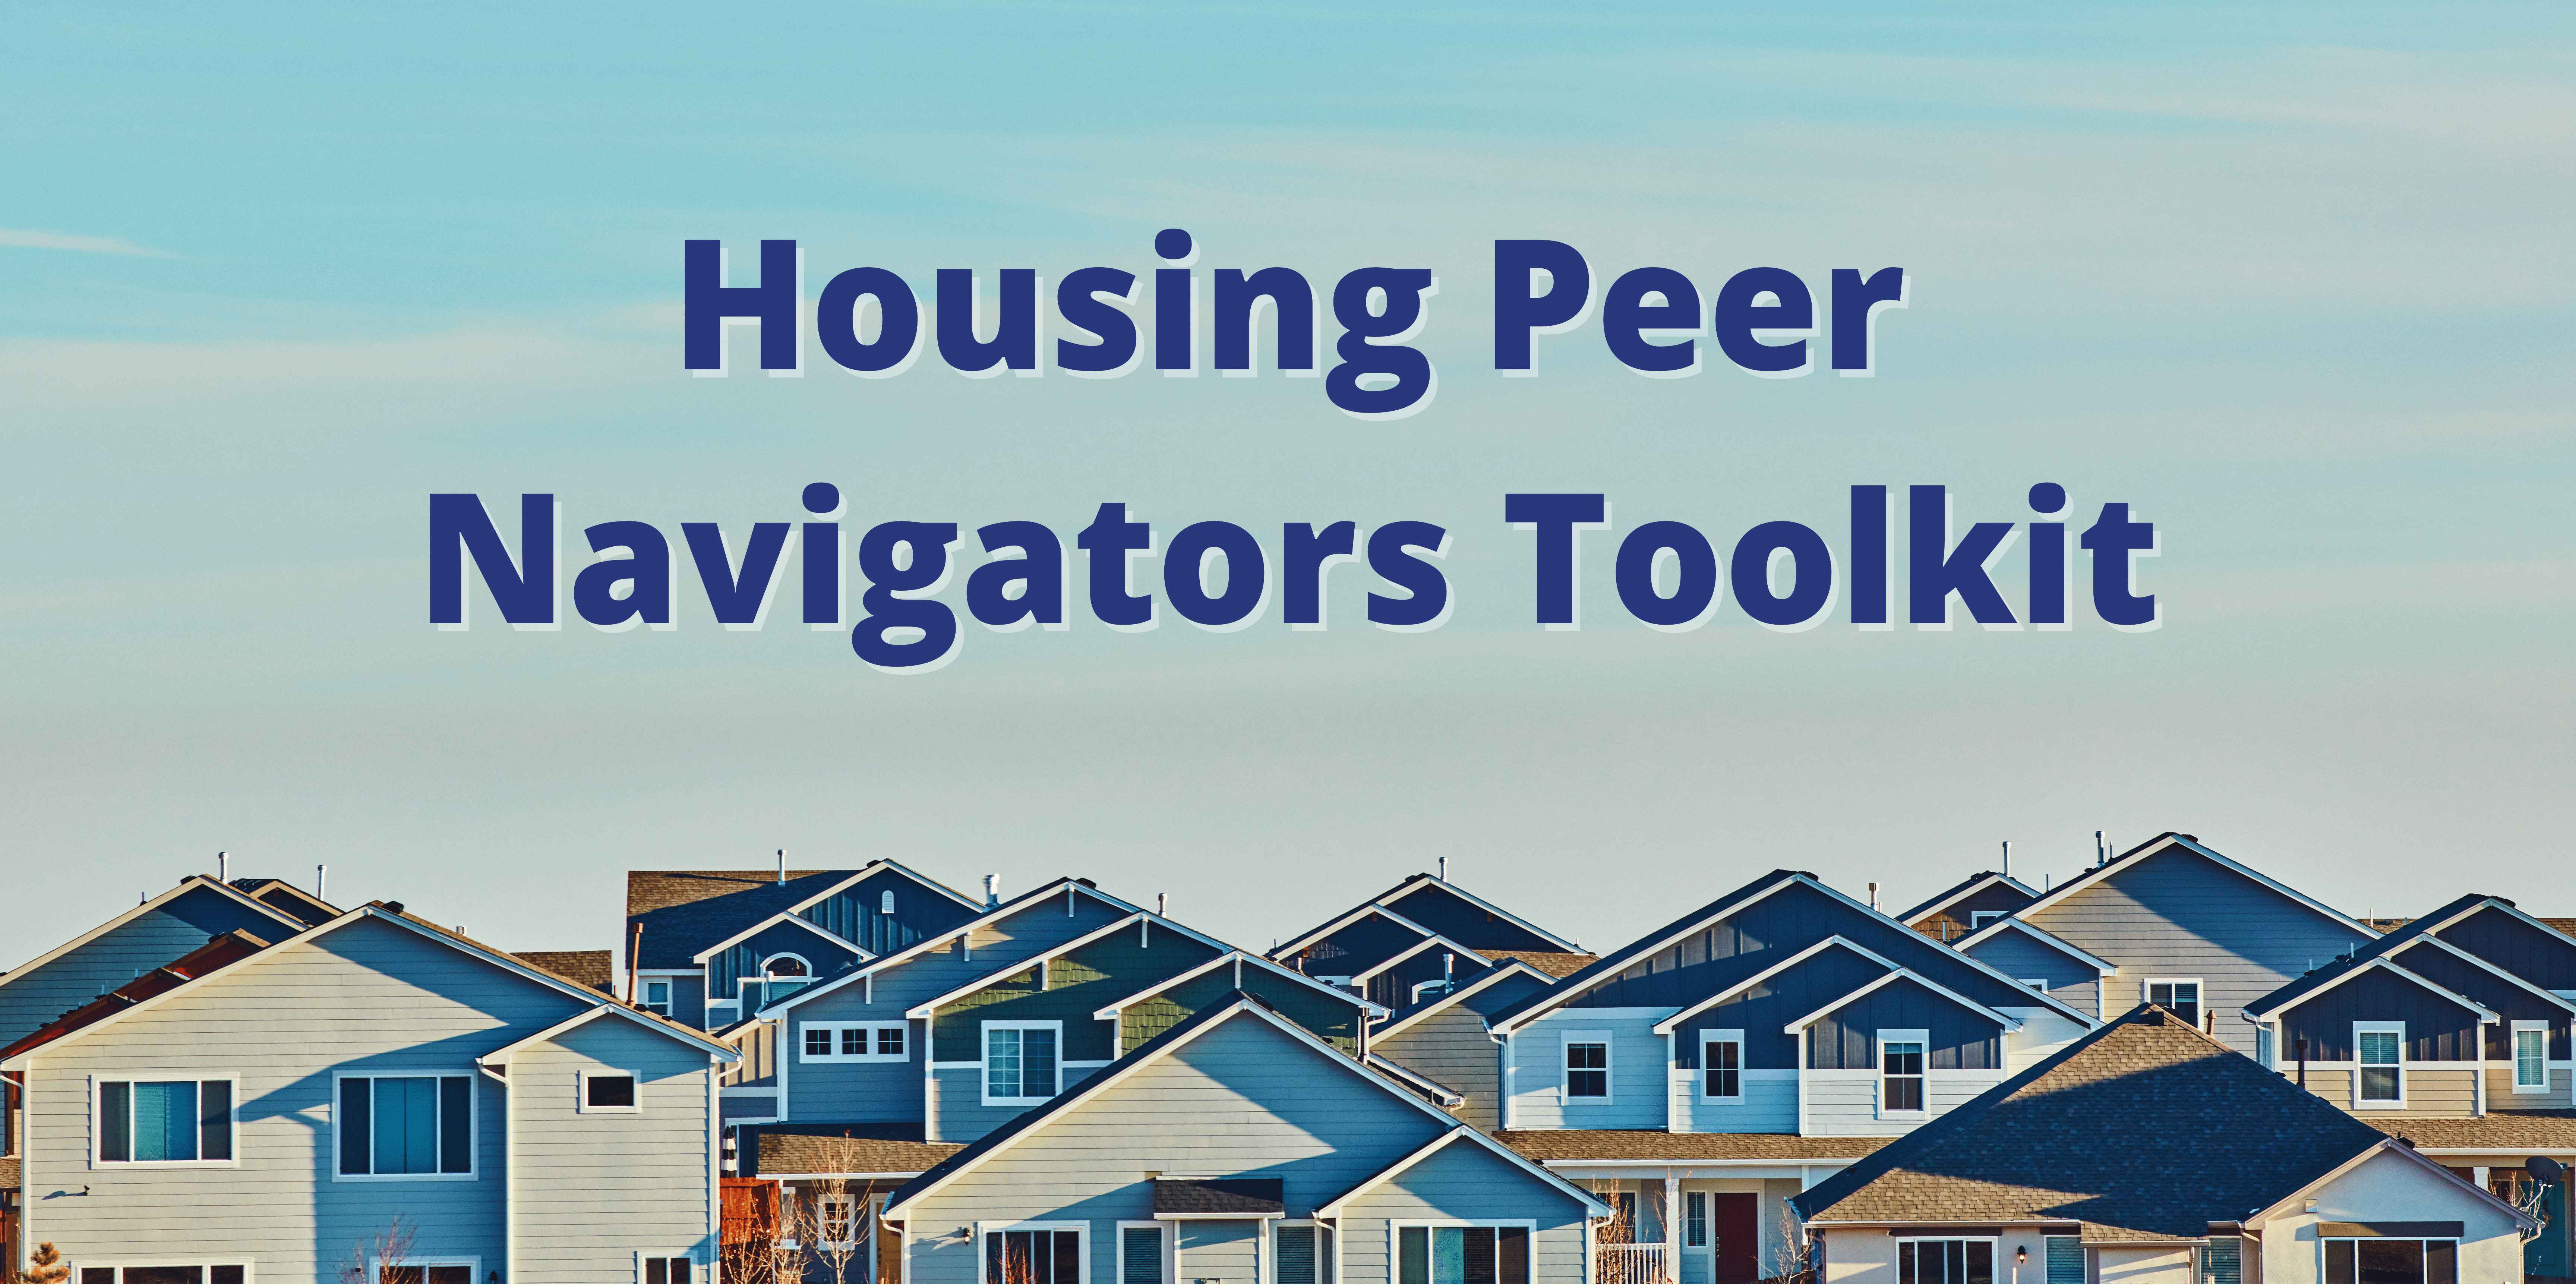 Housing Peer Navigators Toolkit